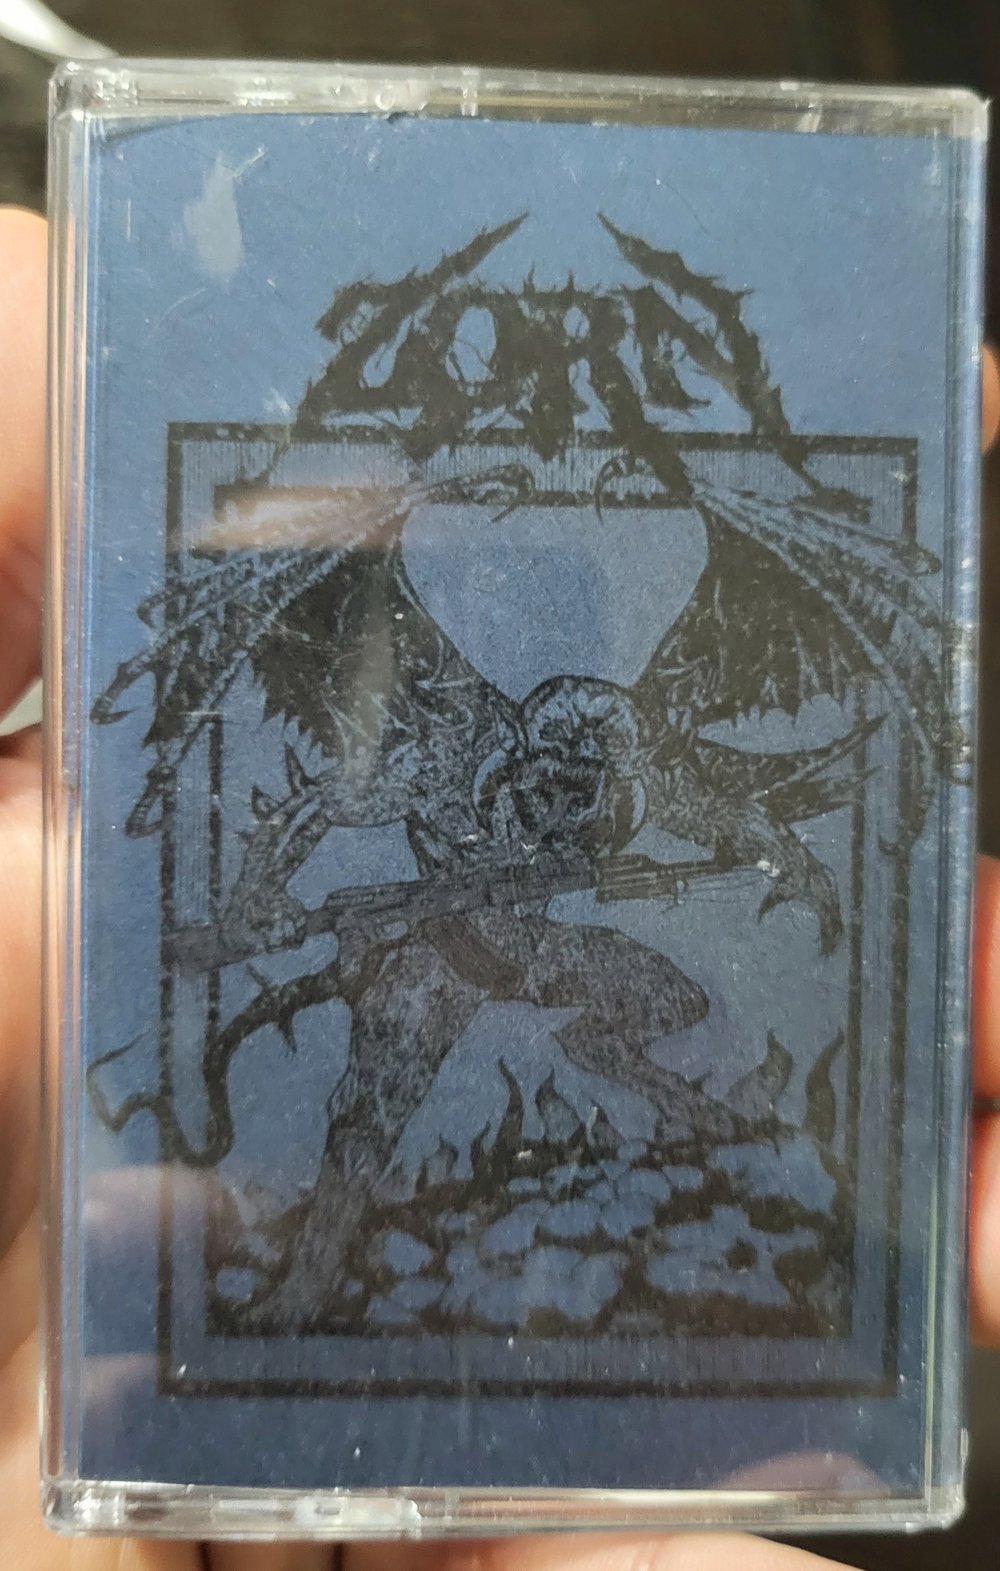 Zorn - S/T Tour Edition Cassette